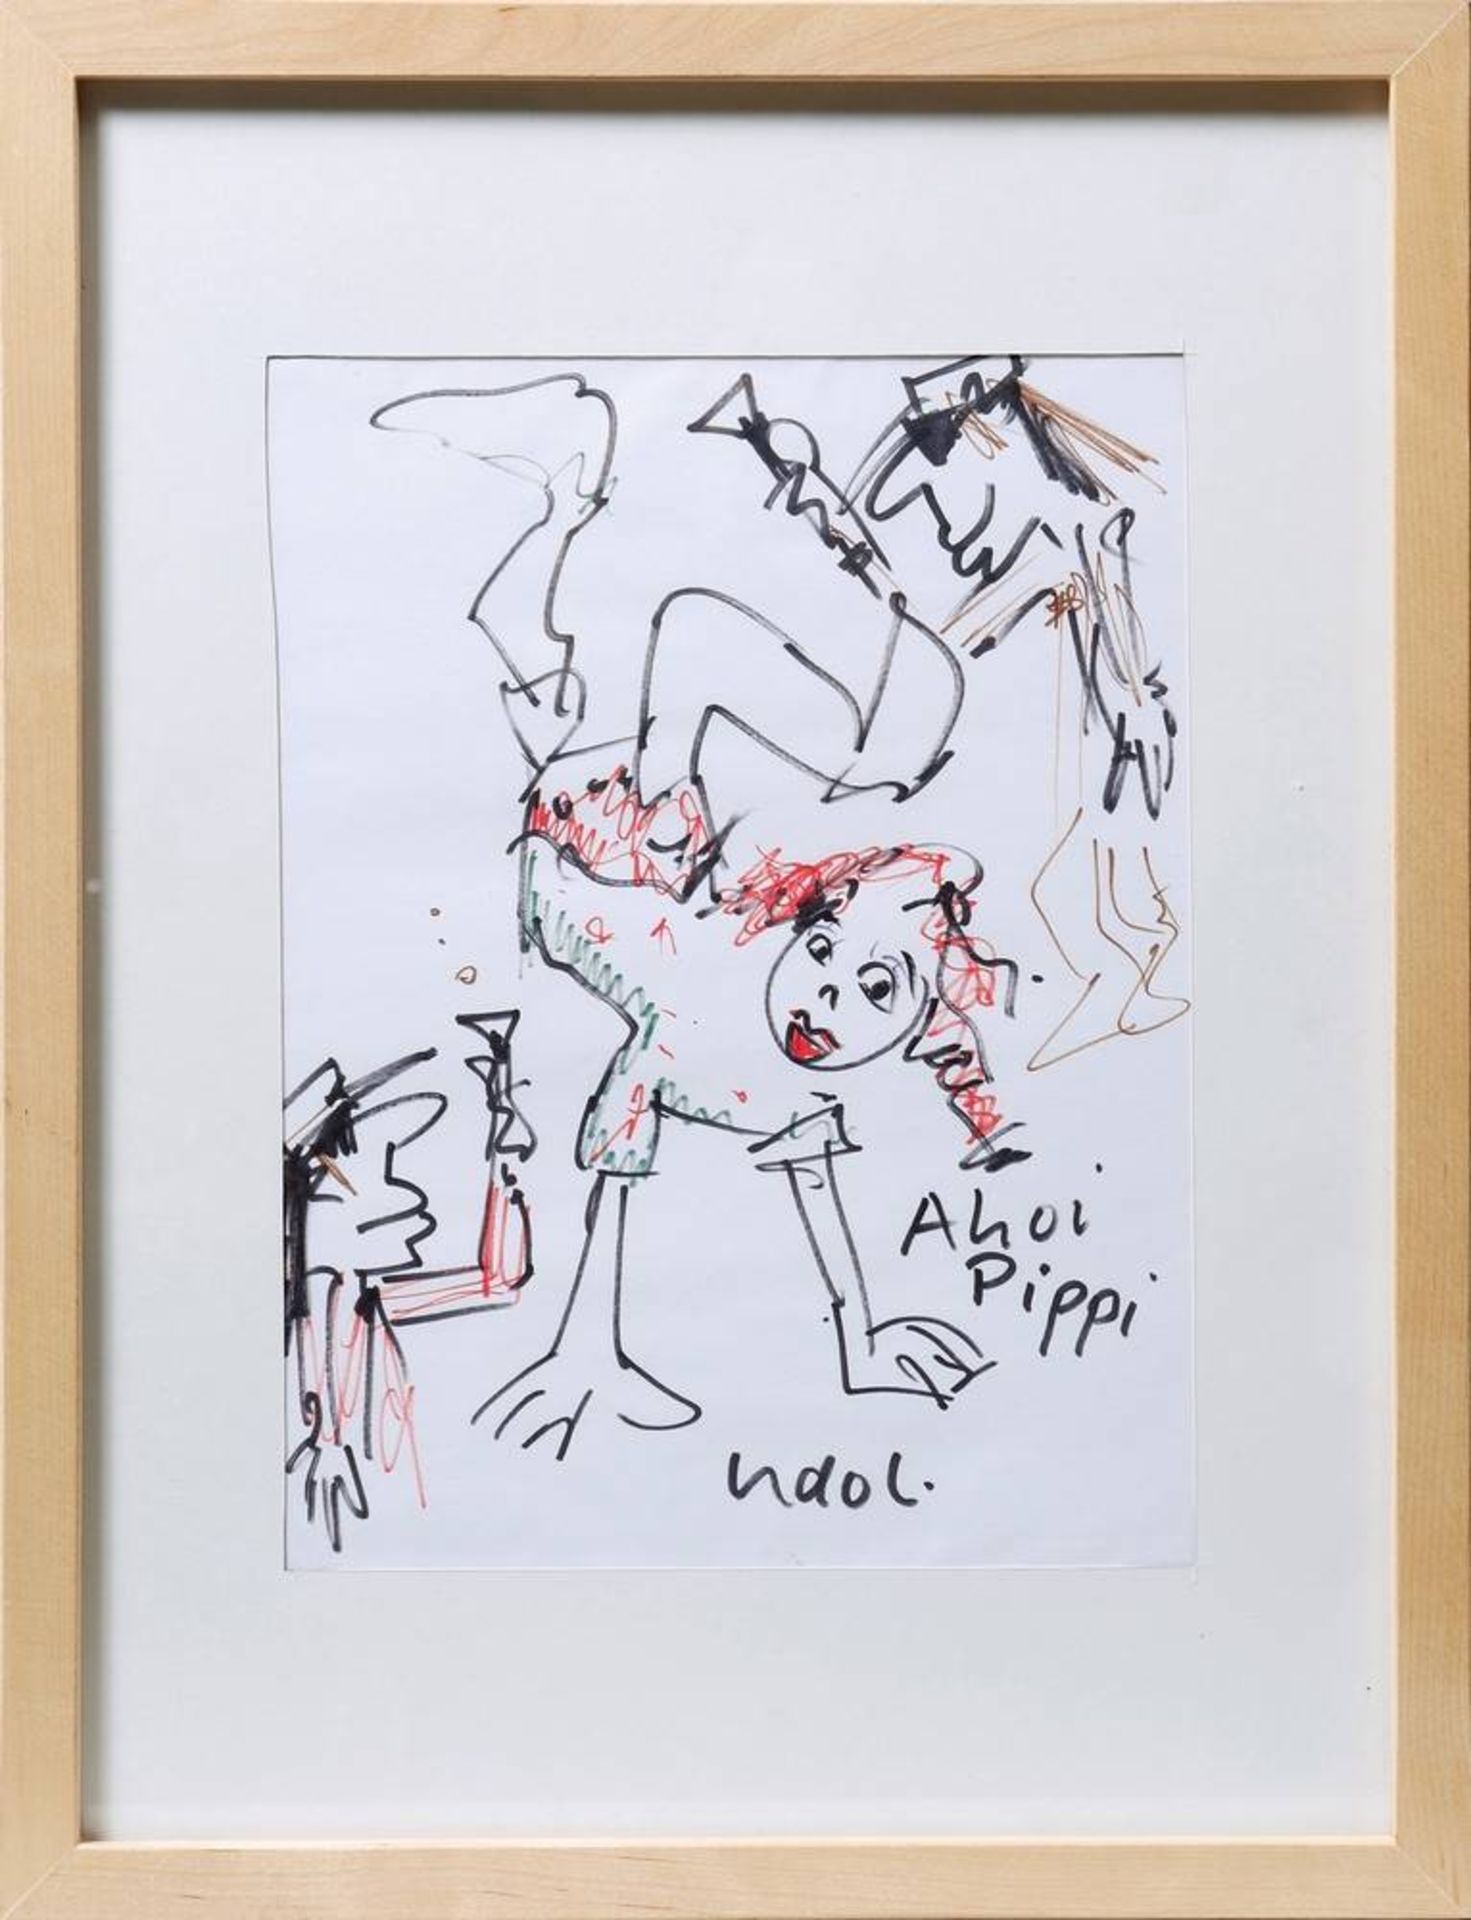 Udo Lindenberg(b. 1946, Gronau/Westf.), "Ahoi Pippi", multi-coloured felt-tip on paper, signed